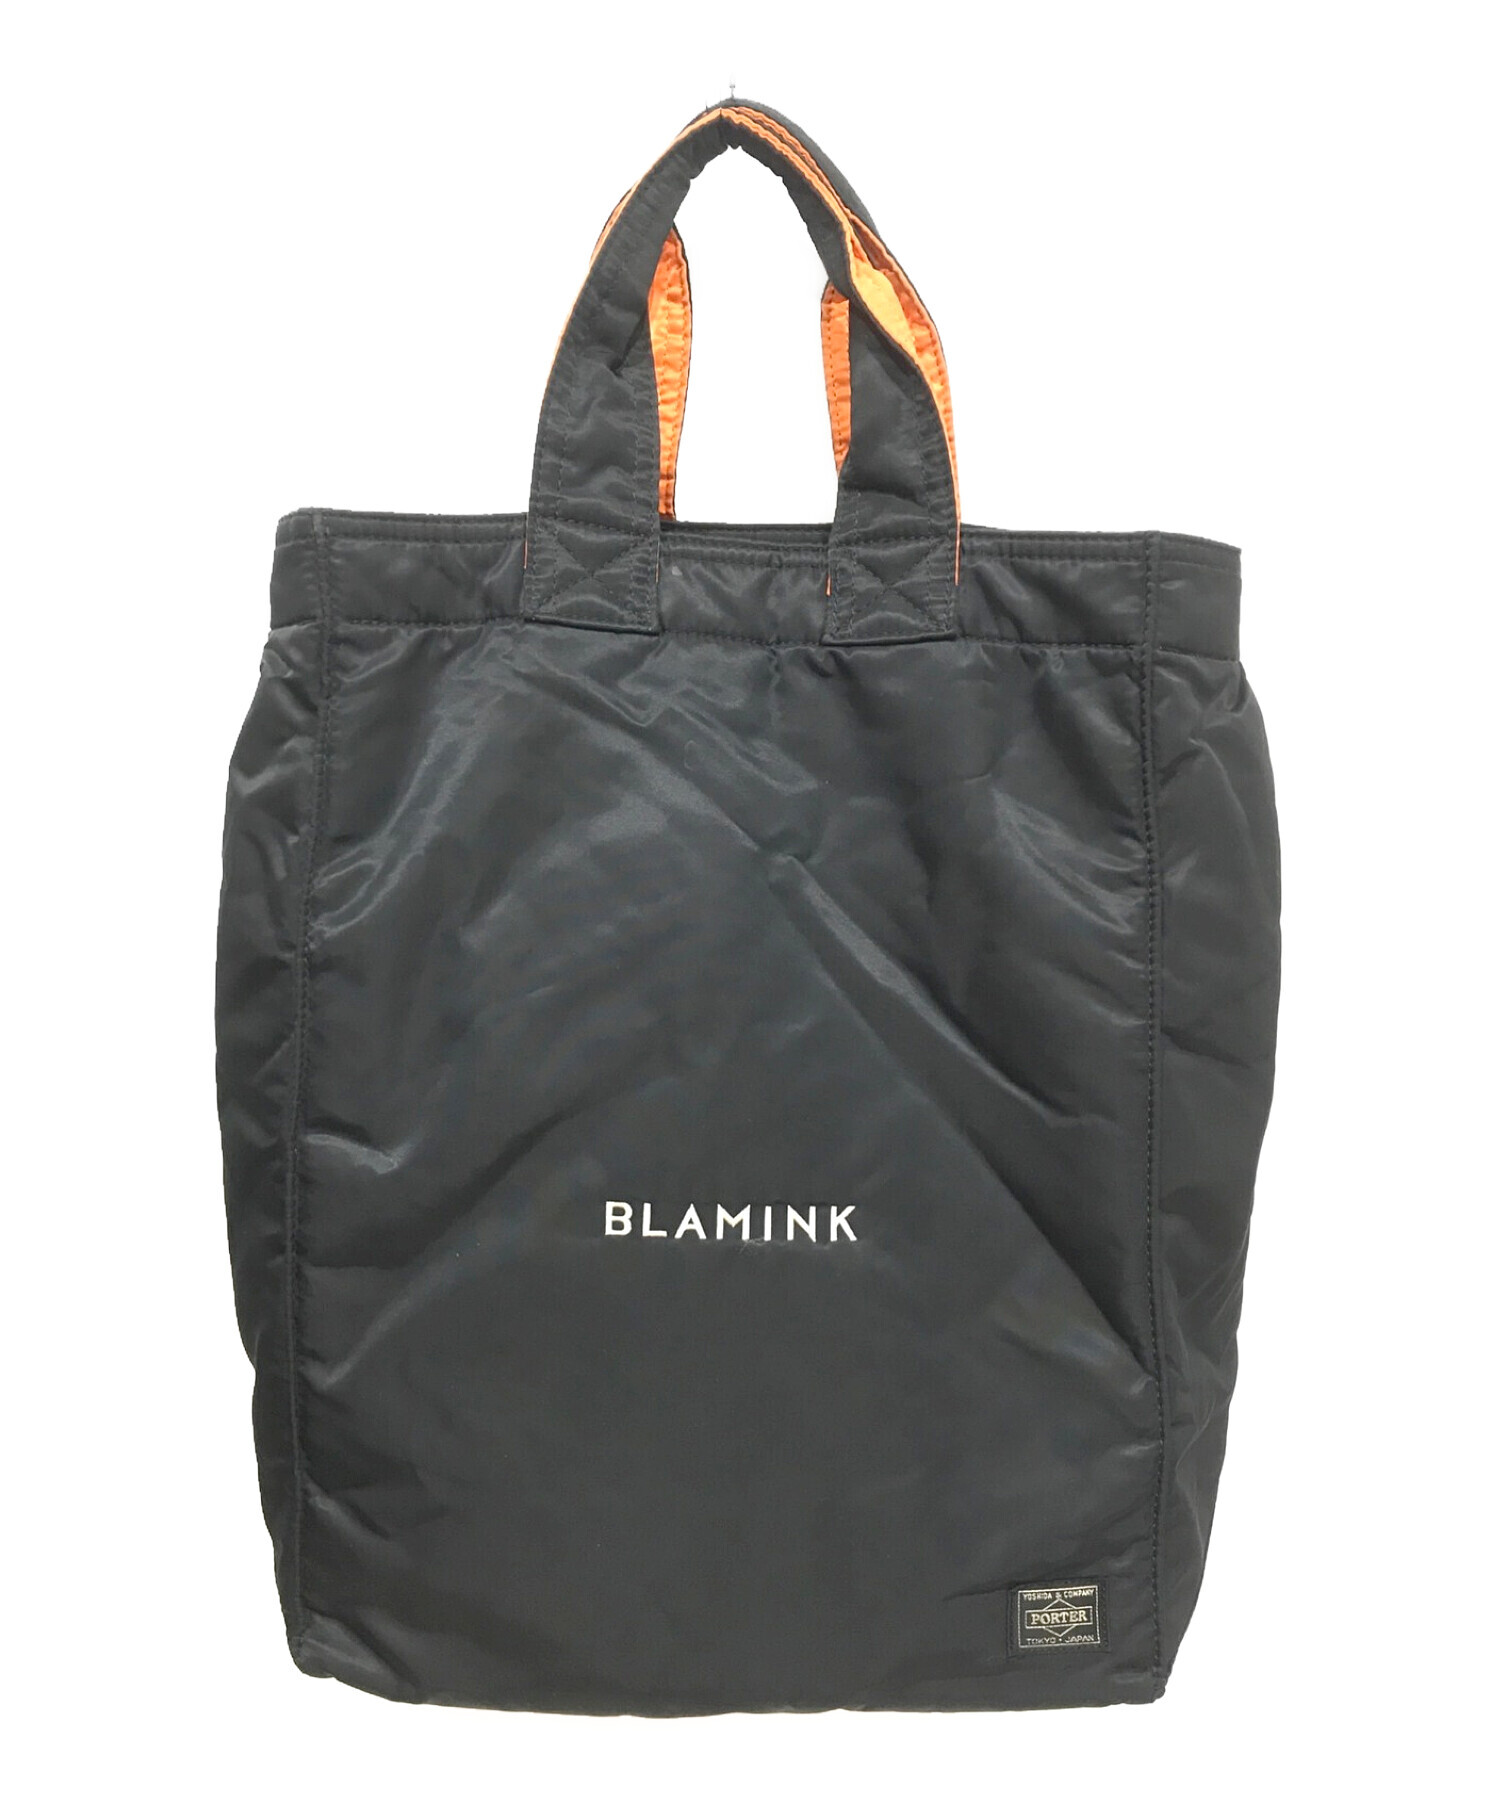 【新品】BLAMINK ブラミンク ムートンバッグ 定価88,000円ショルダーバッグ